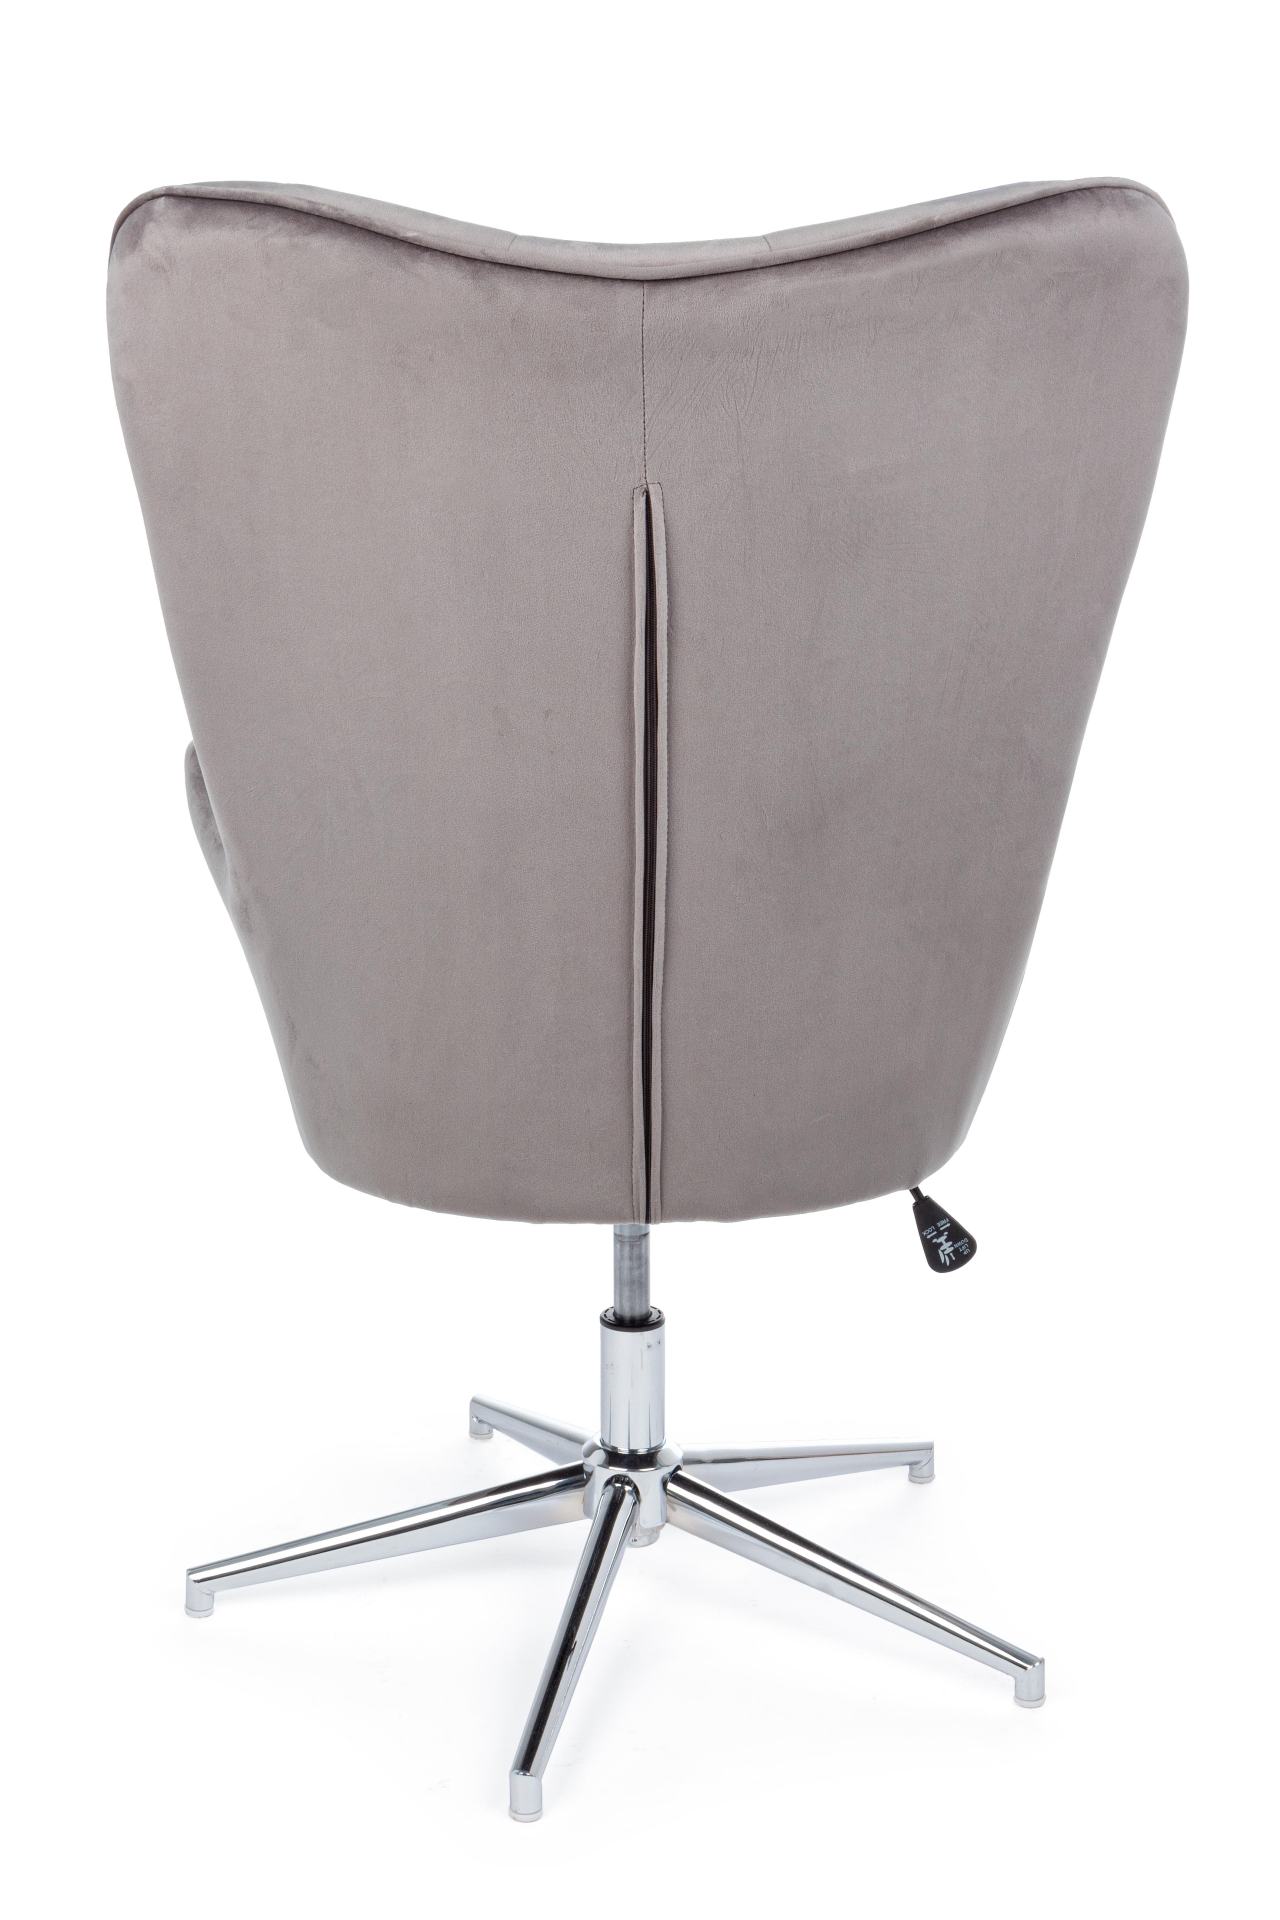 Der Sessel Farida überzeugt mit seinem modernen Design. Gefertigt wurde er aus Samt, welcher einen grauen Farbton besitzt. Das Gestell ist aus Metall und hat eine silberne Farbe. Der Sessel besitzt eine Sitzhöhe von 45 cm. Die Breite beträgt 69 cm. Der Se